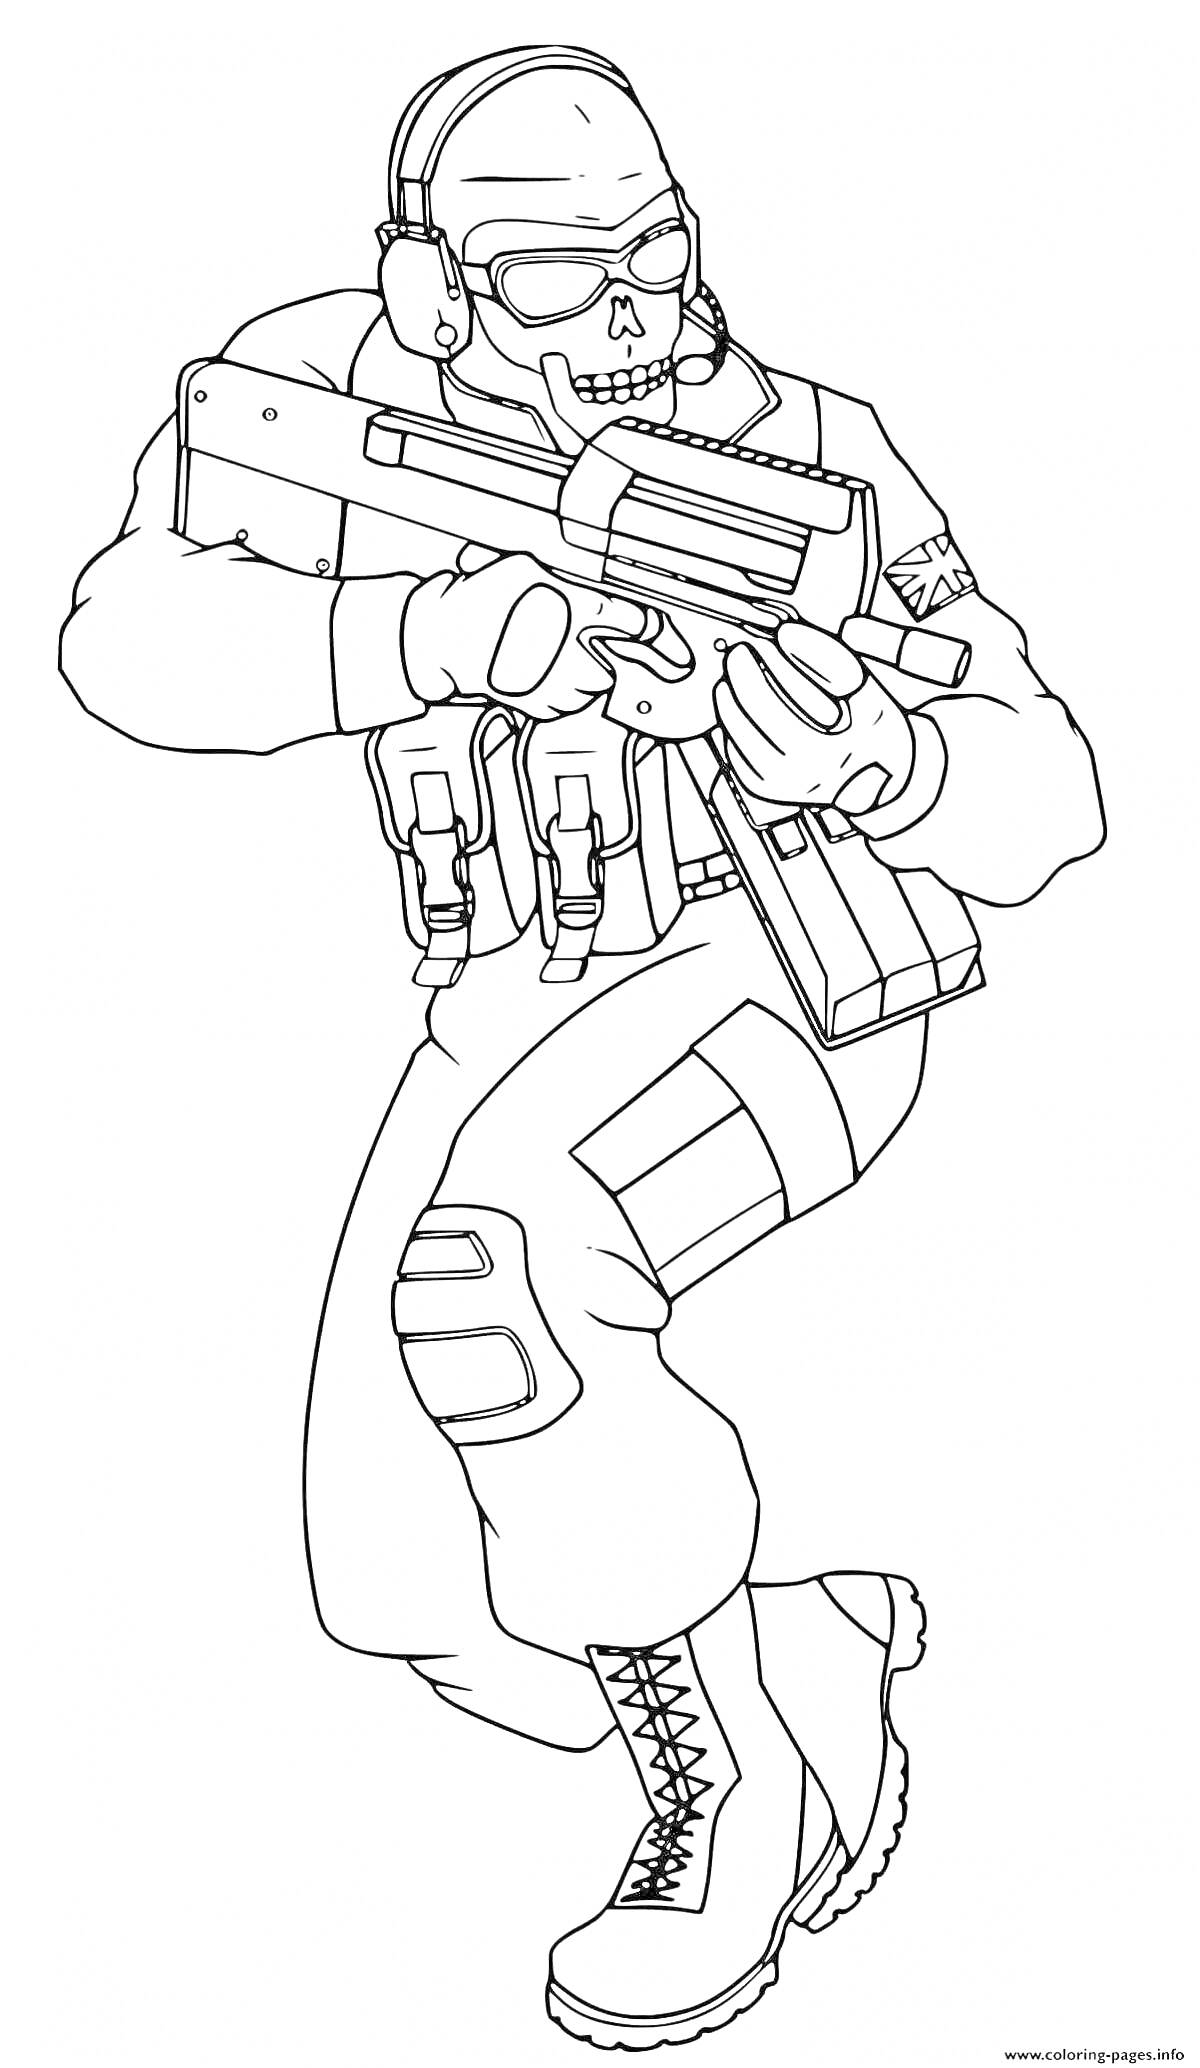 Раскраска Военнослужащий с оружием и черепной маской из игры Standoff 2